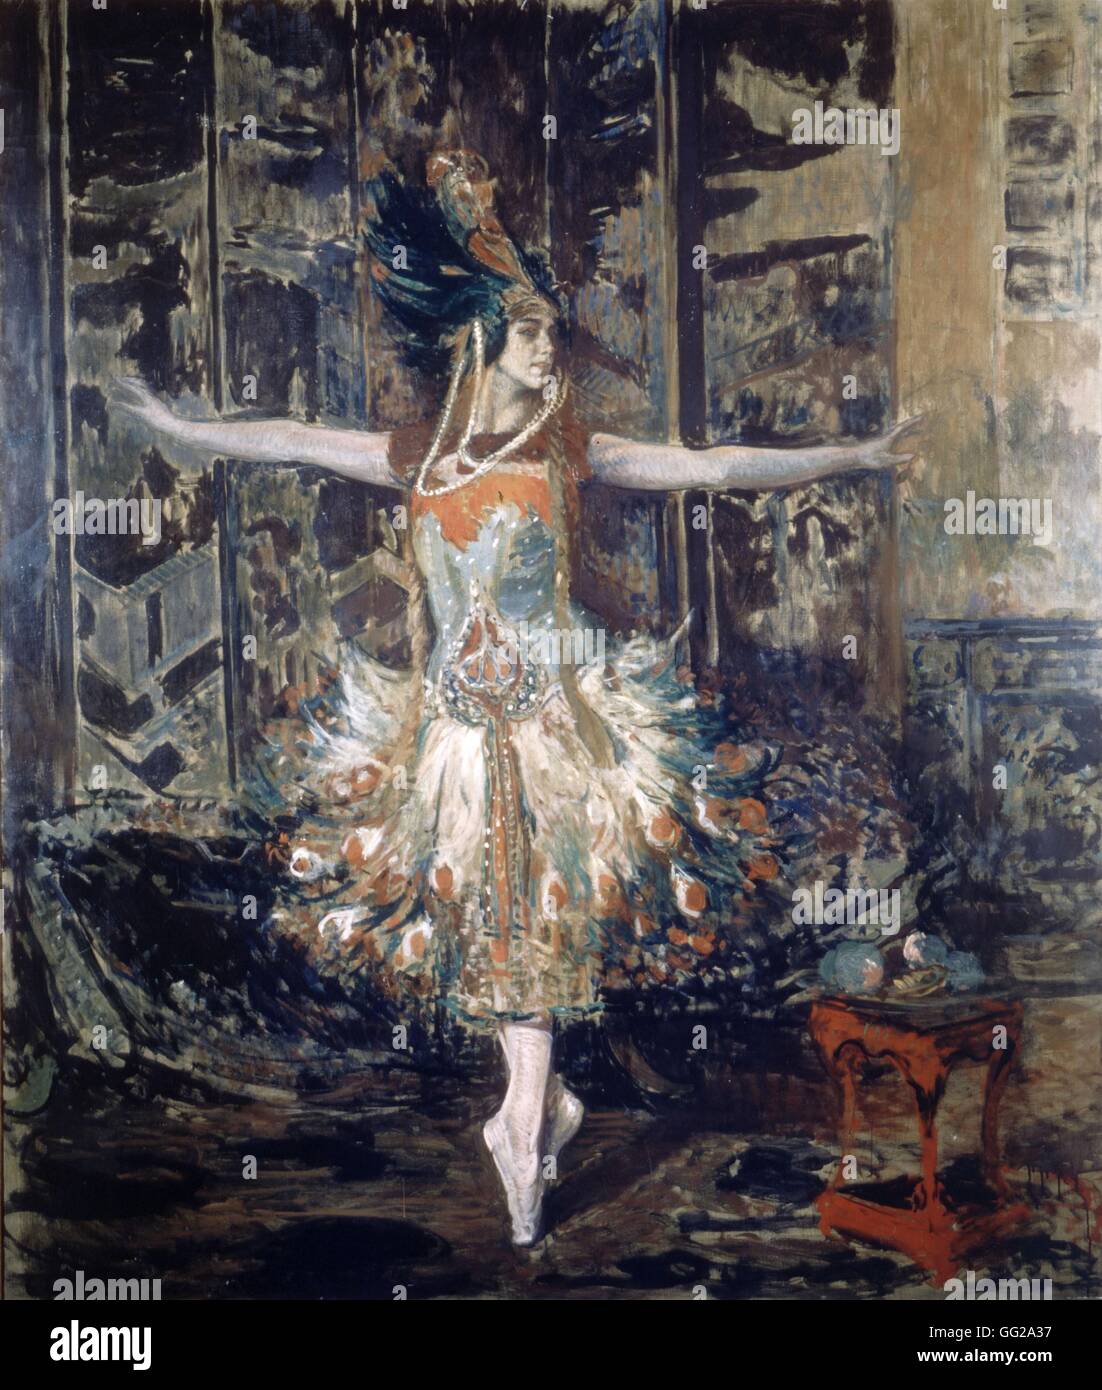 Jacques-Emile Blanche scuola francese Ritratto di Tamara Karsavina come 'Il Firebird' 1910 olio su tela Parigi. bibliothèque-Musée de l'Opéra Garnier Foto Stock